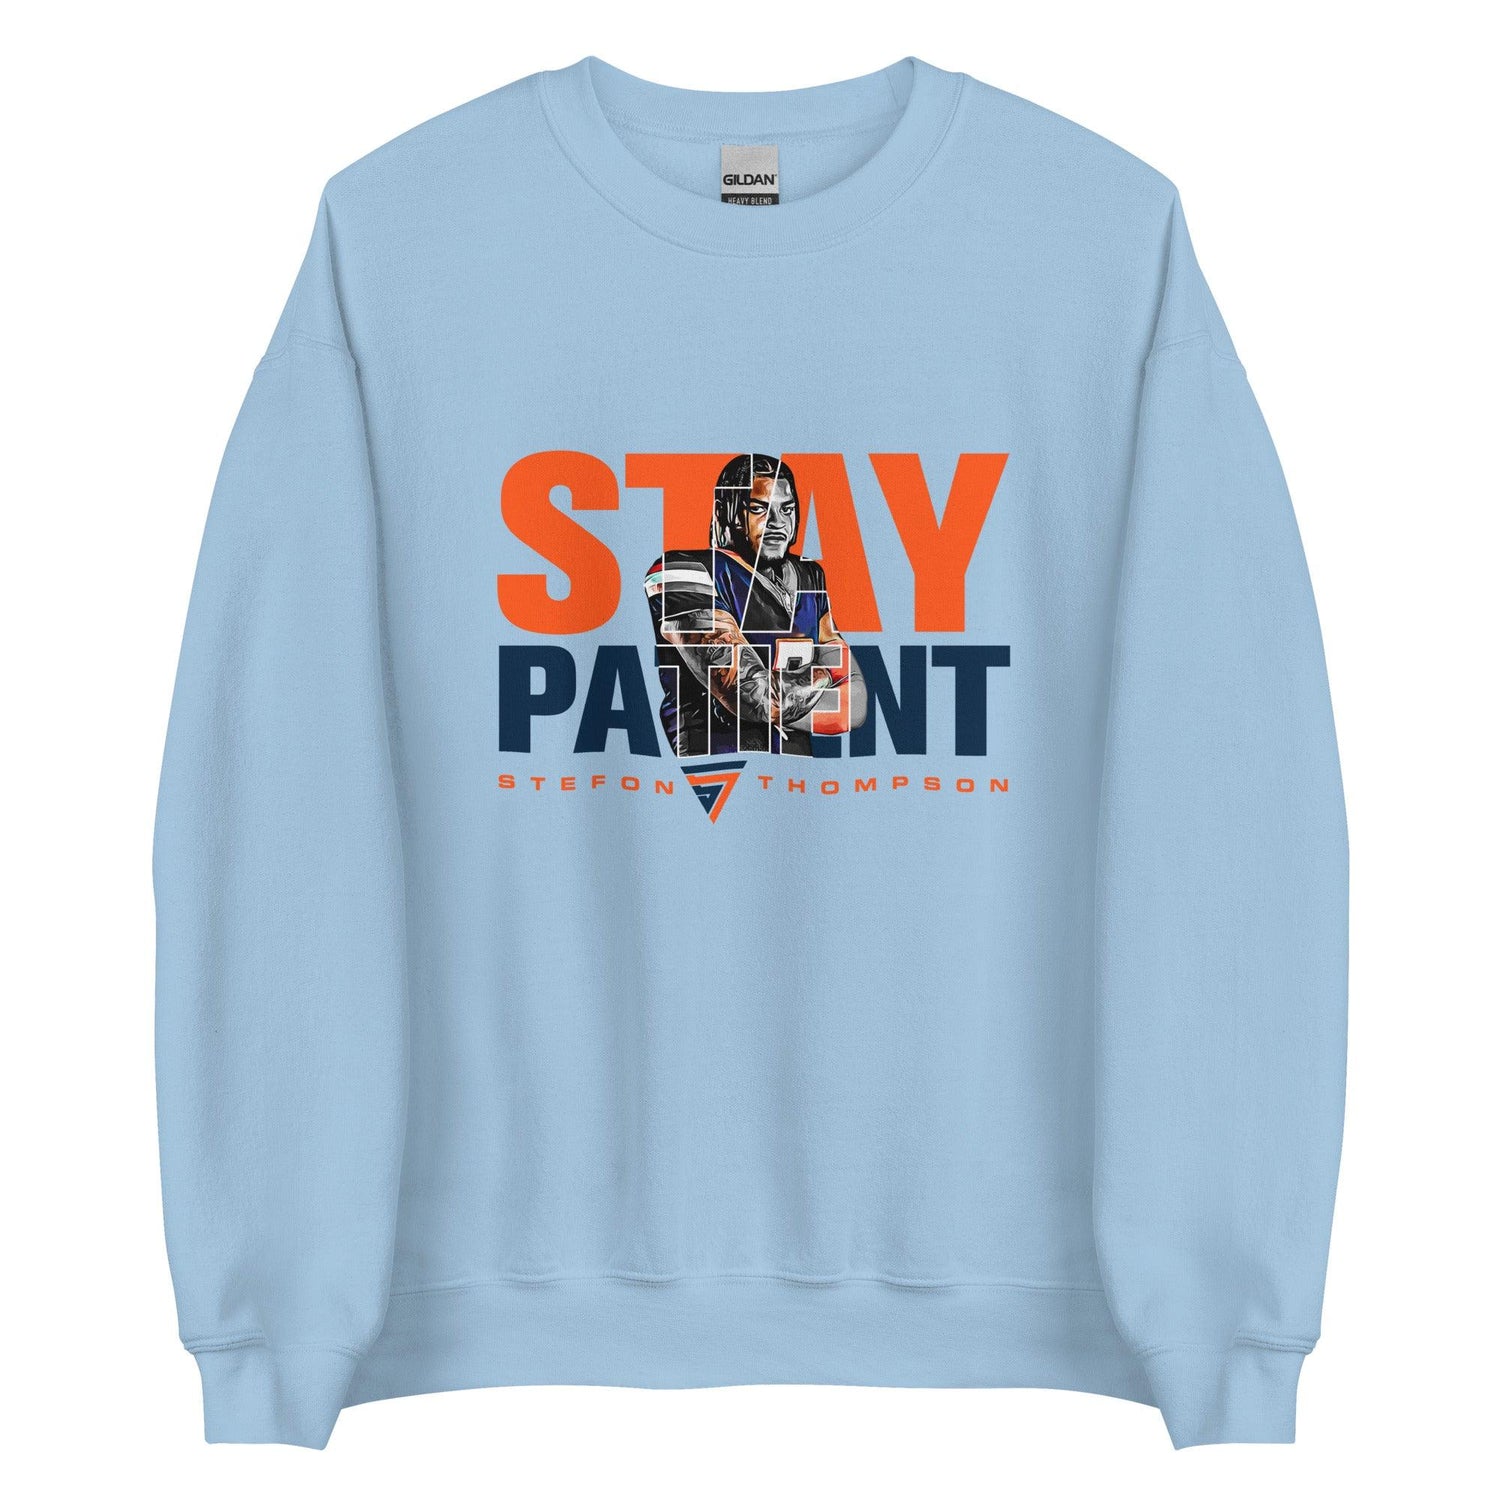 Stefon Thompson "Stay Patient" Sweatshirt - Fan Arch